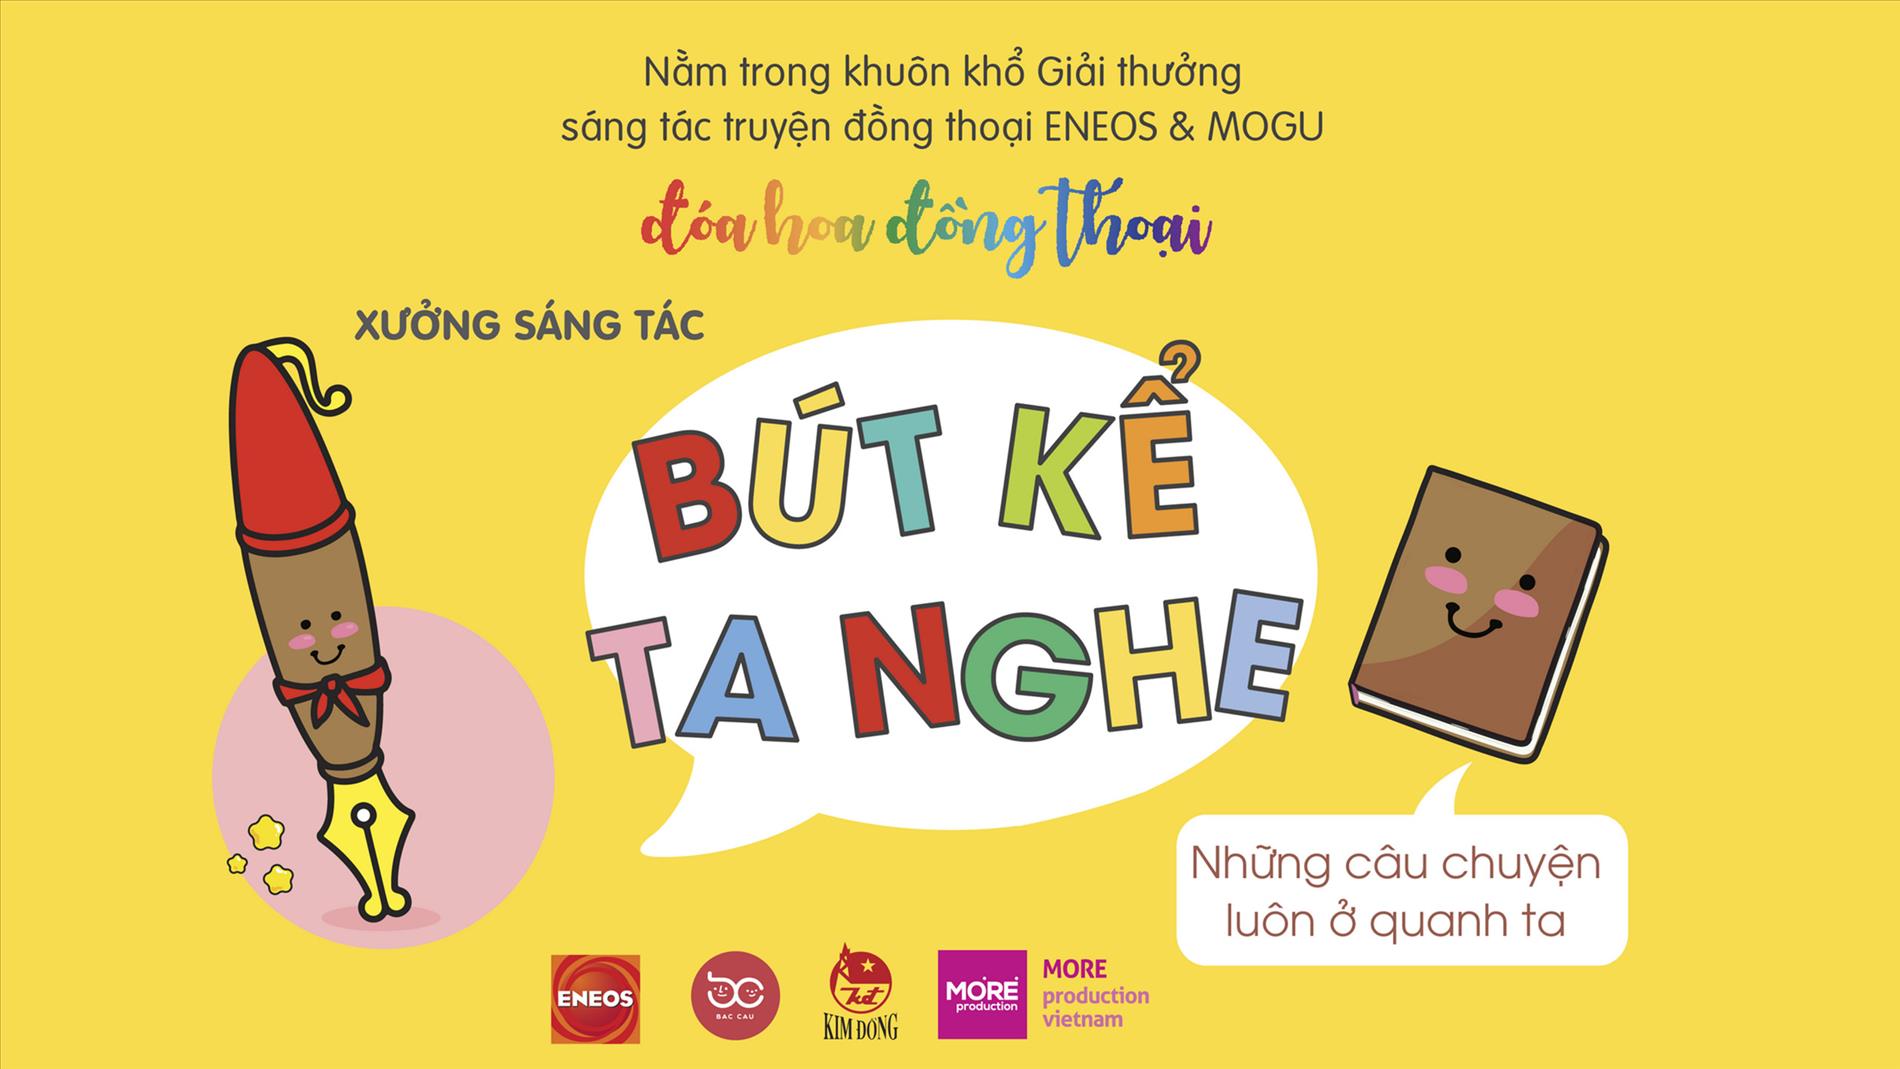 Workshop “Bút kể ta nghe”- mùa hoa Đồng thoại gieo mầm ở THCS Nguyễn Tri Phương